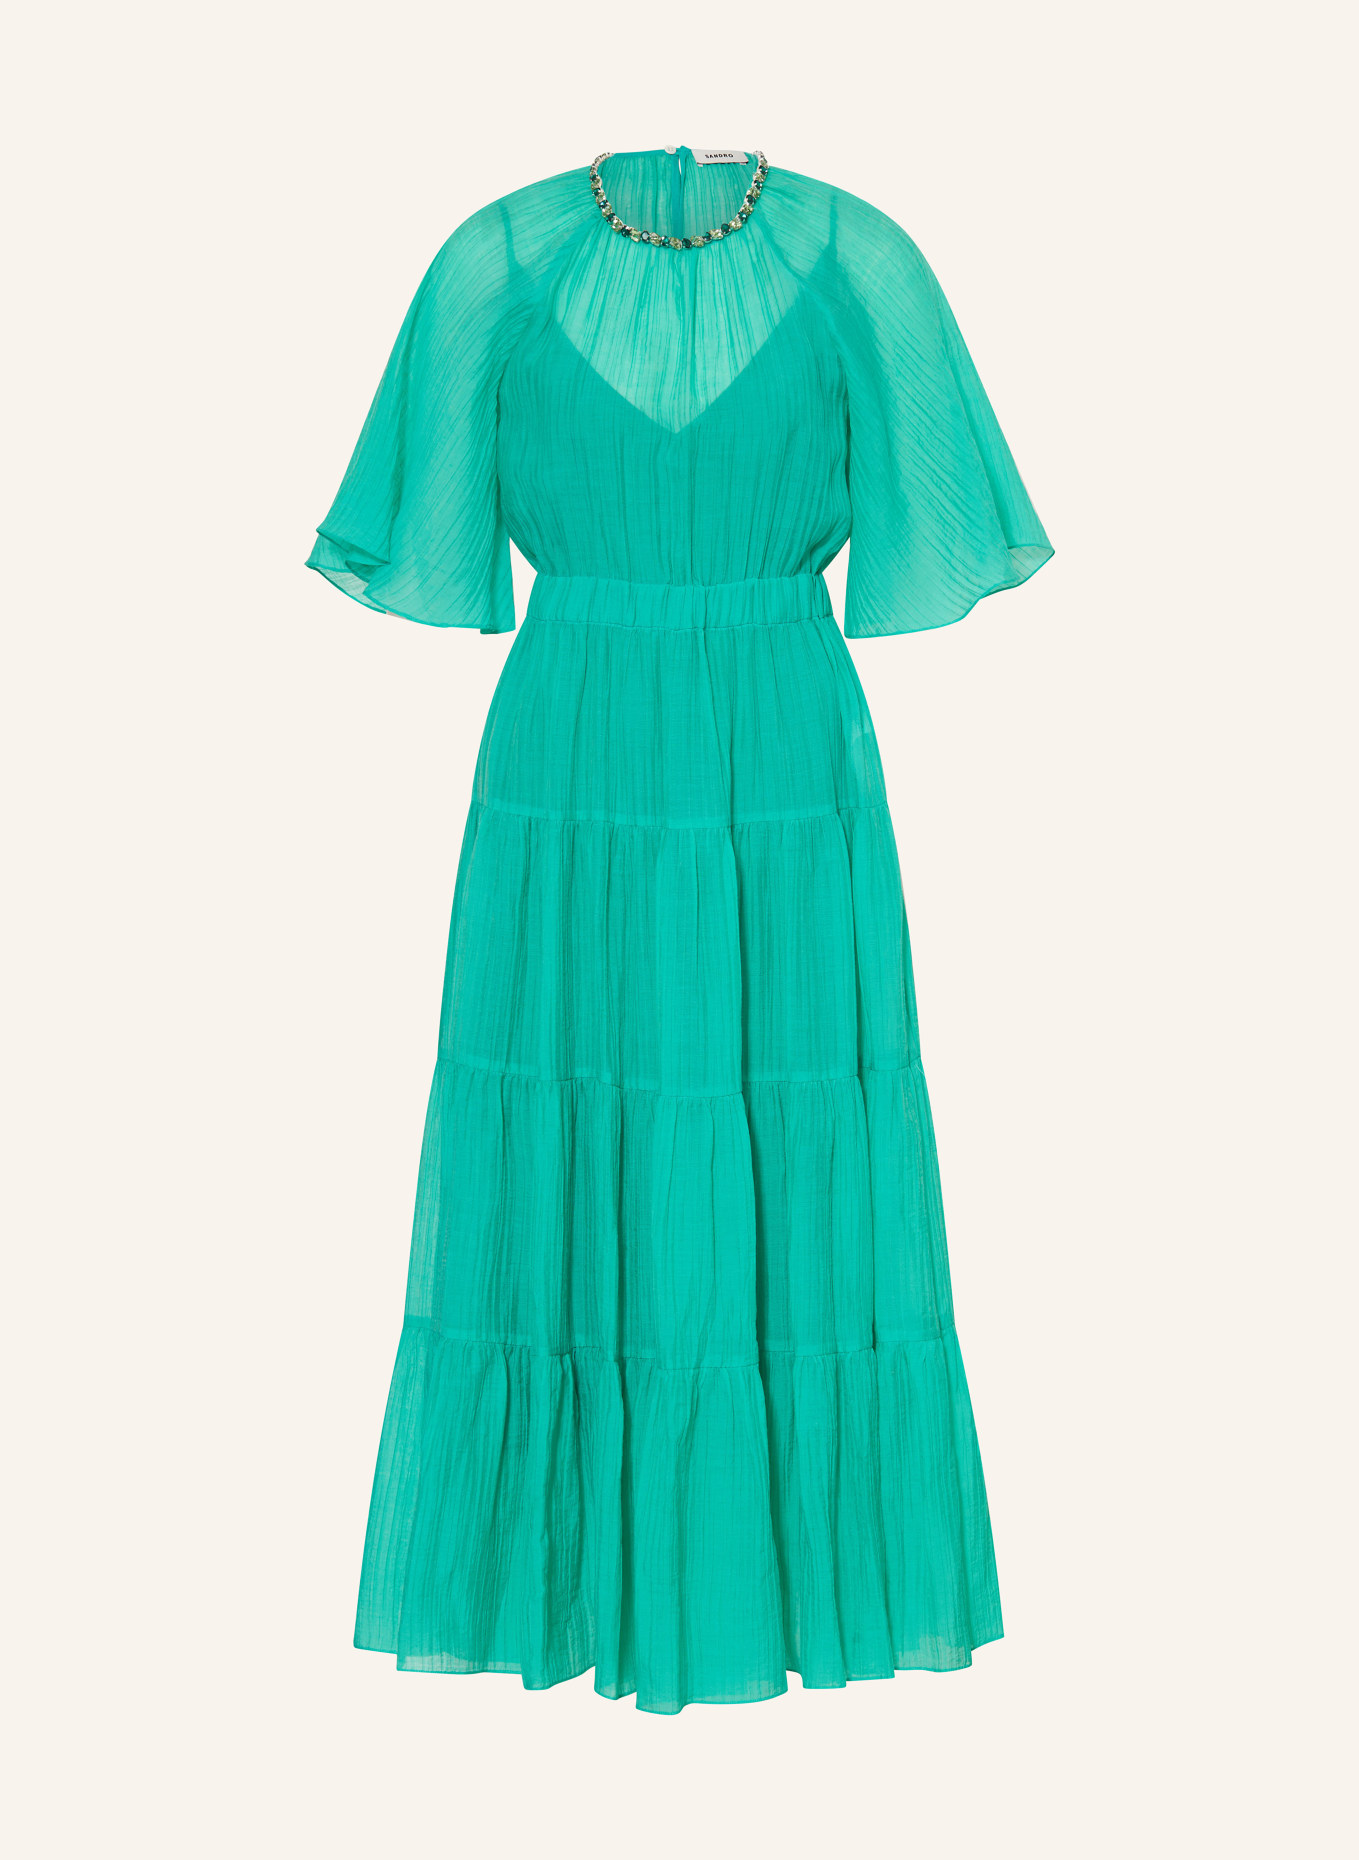 SANDRO Kleid mit Volants und Schmucksteinen, Farbe: GRÜN (Bild 1)